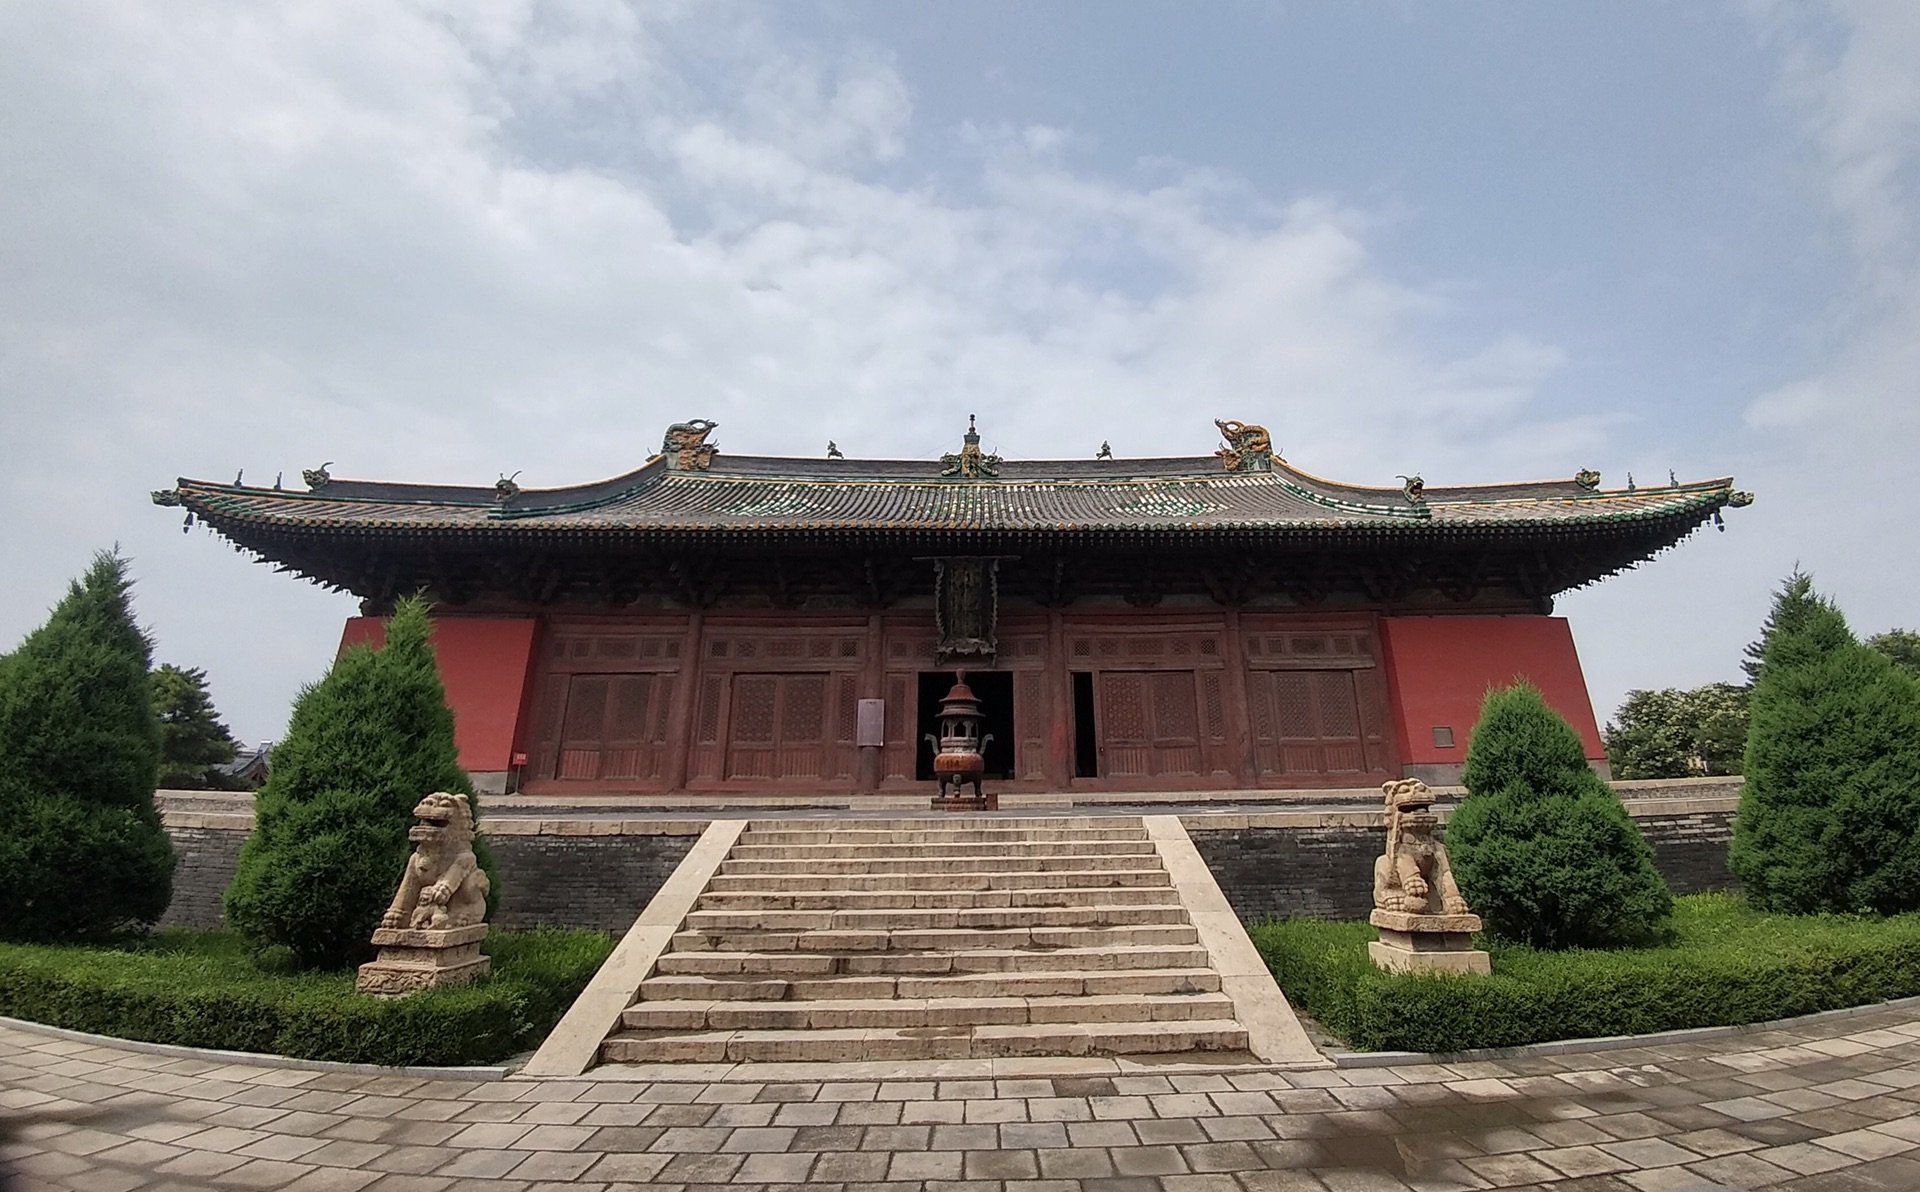 接下来就是崇福寺最精华的弥陀殿,金熙宗皇统三年(1143)建造,国内辽金